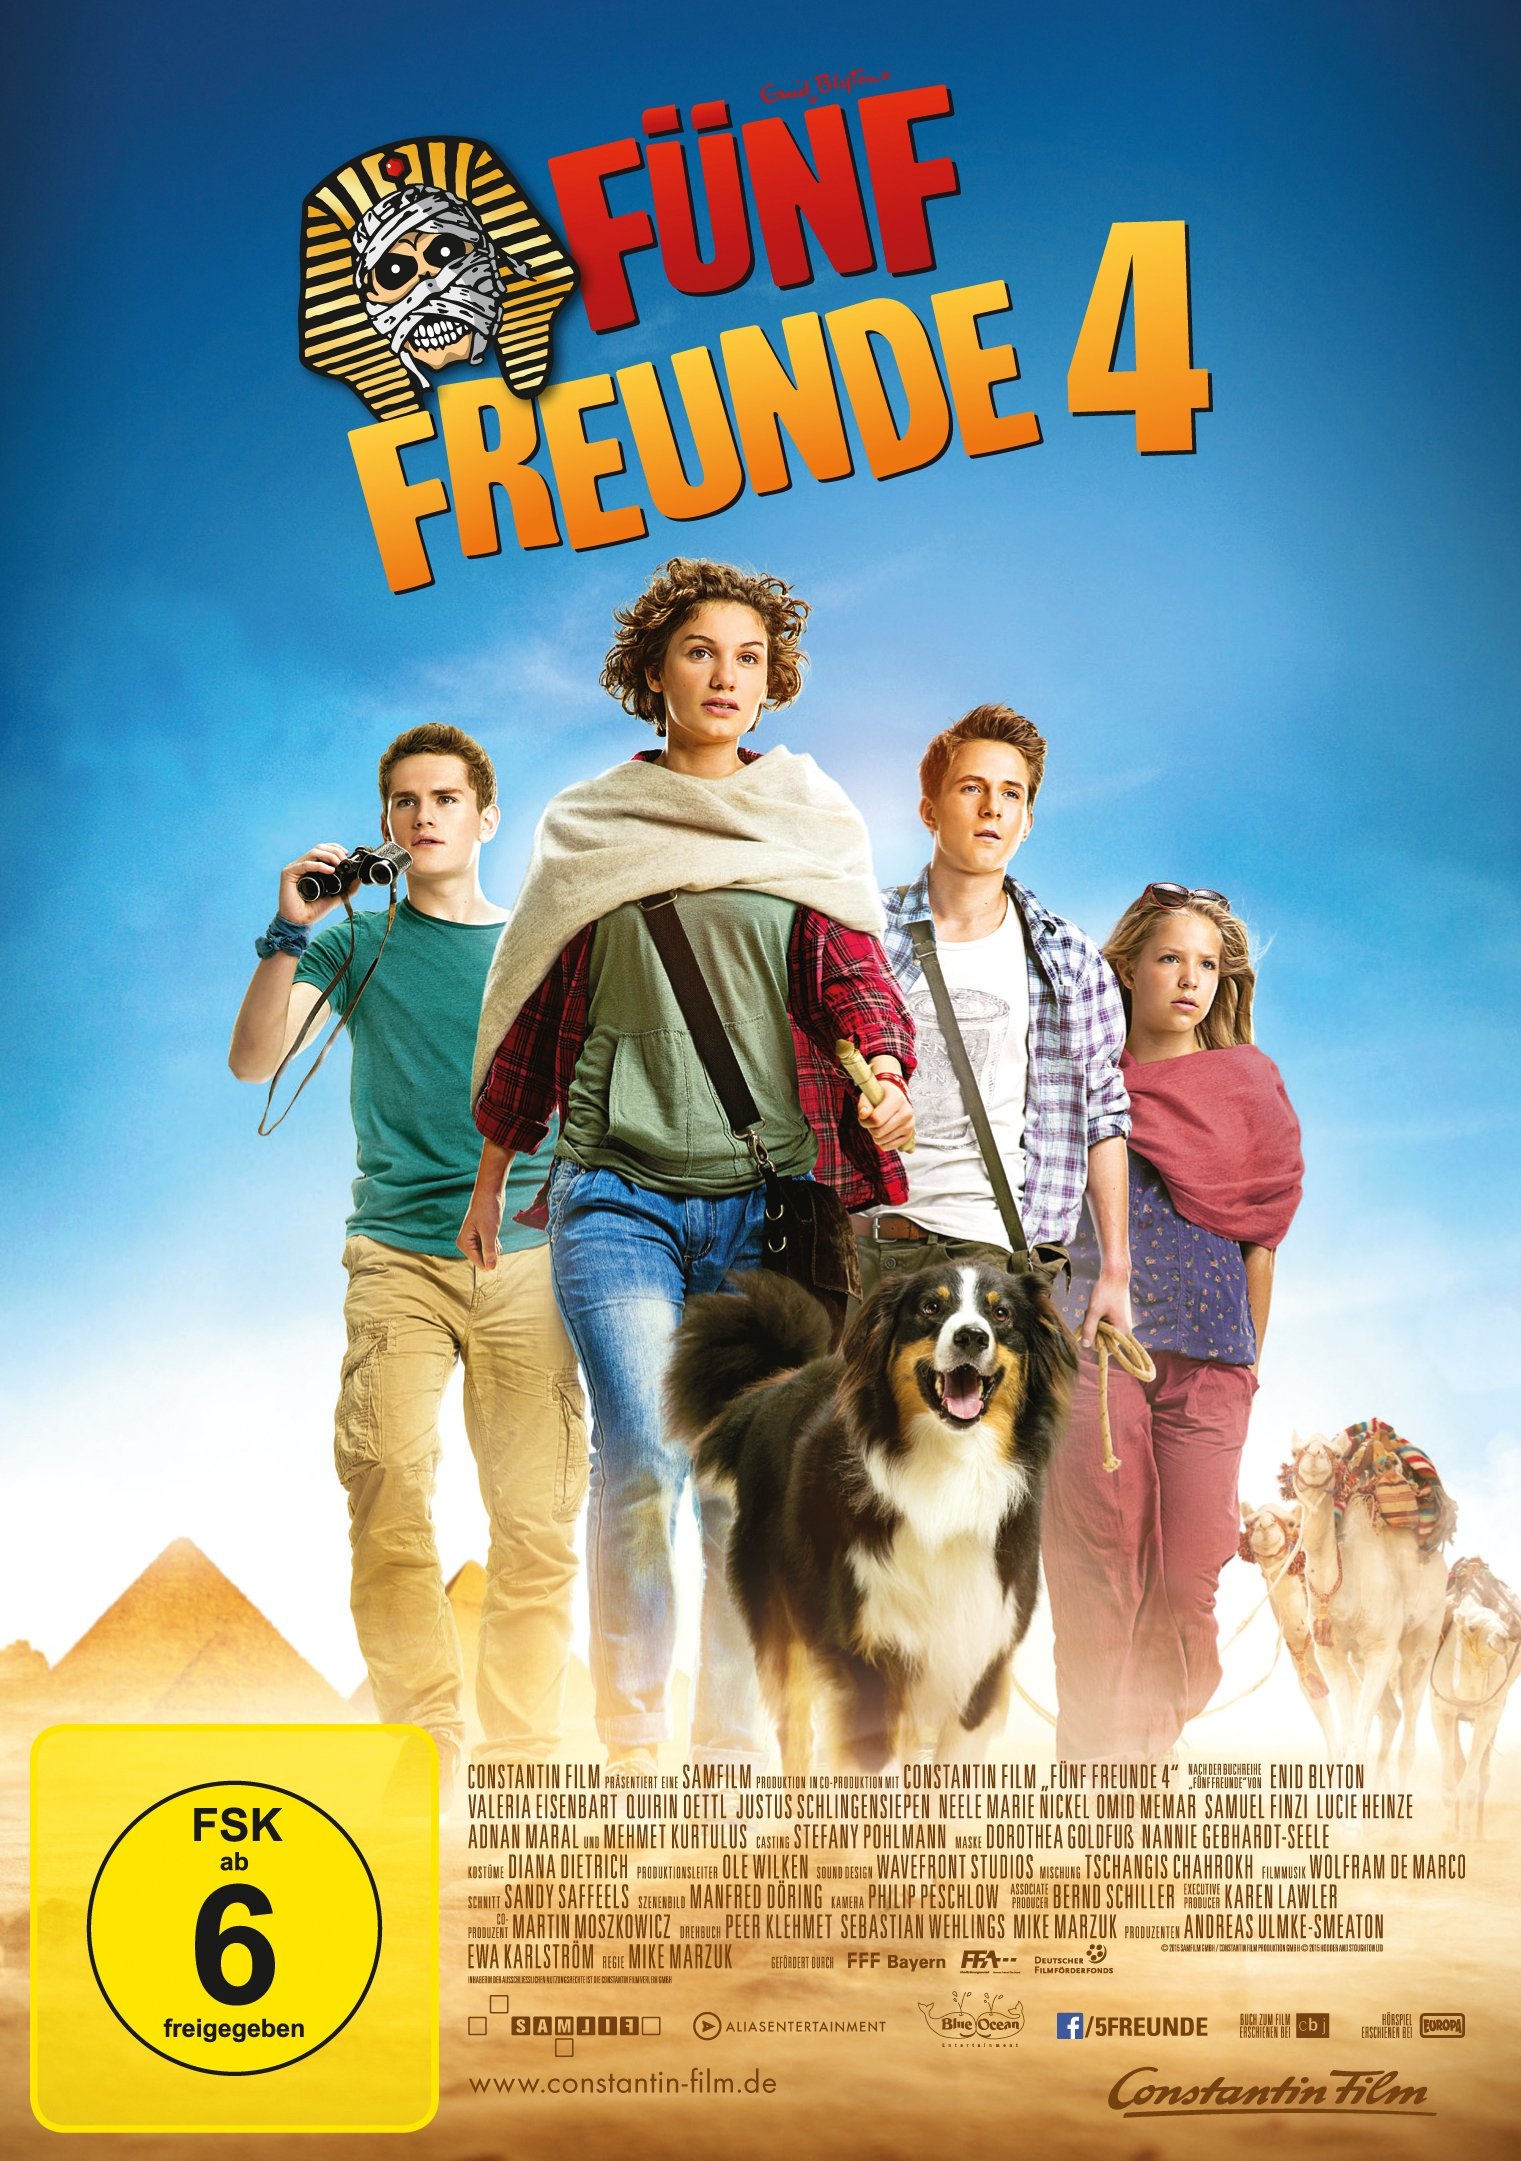 F�nf Freunde 4 (DVD) [DVD]